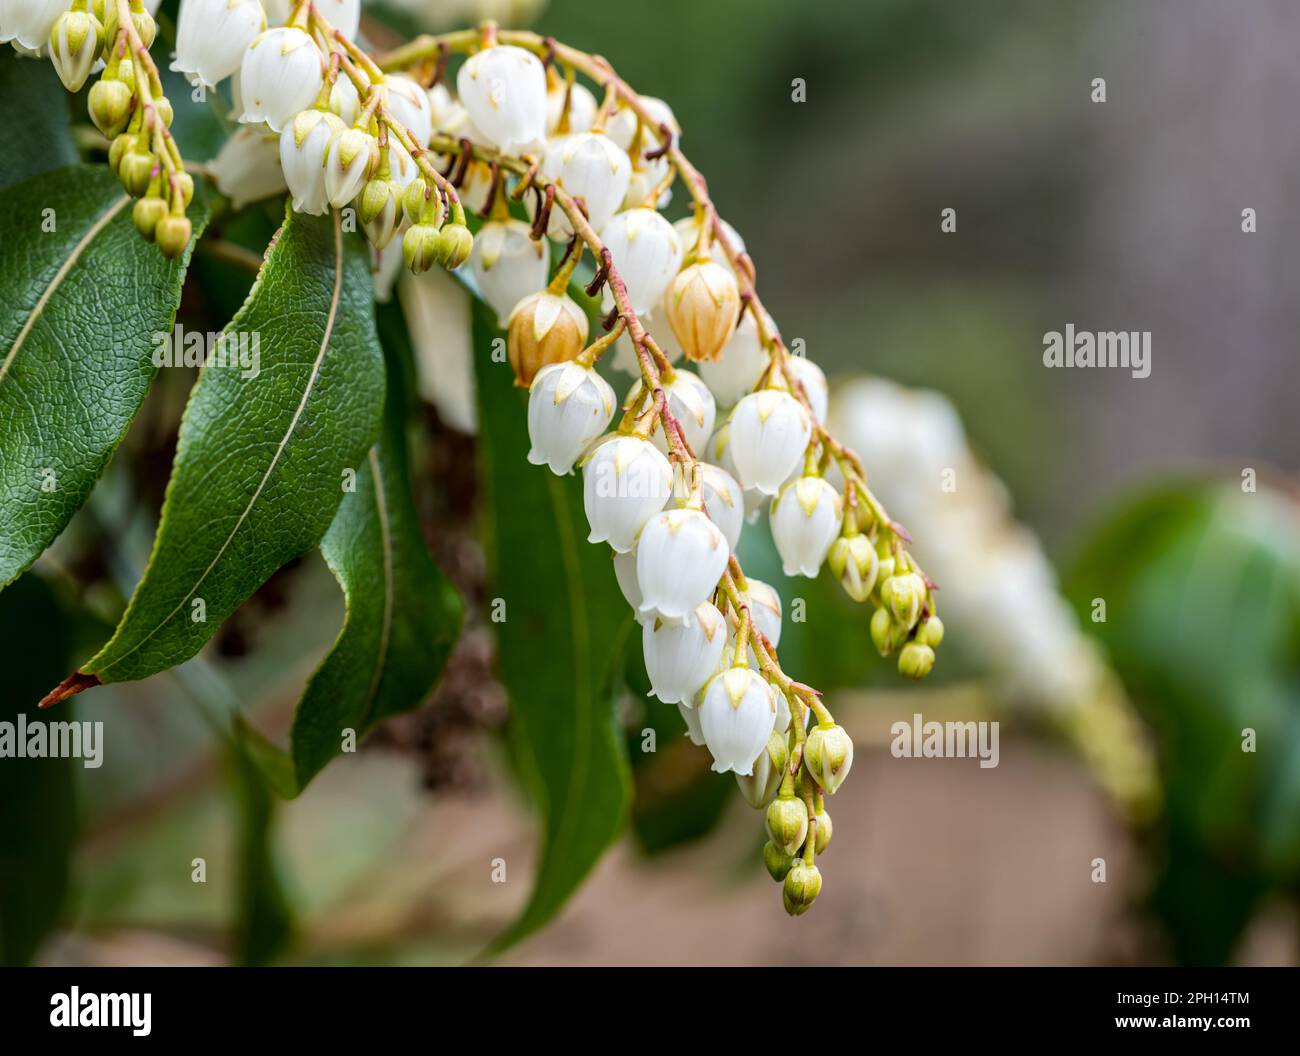 Gros plan des fleurons de Taïwan pieris ou de l'Himalaya andromeda (Pieris formosa), Royal Botanic Garden, Édimbourg, Écosse, Royaume-Uni Banque D'Images